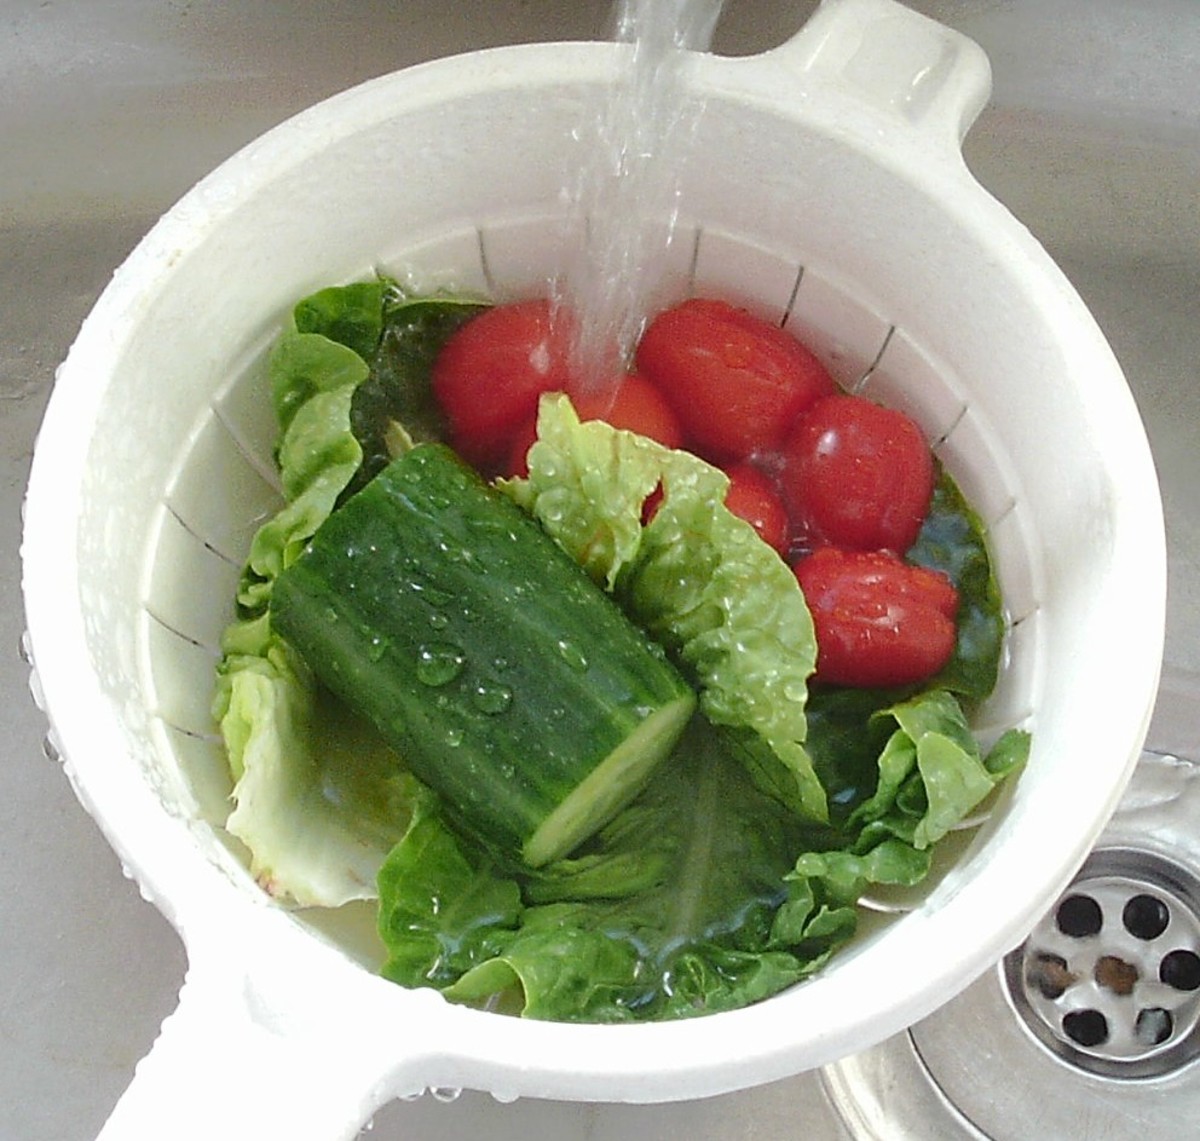 Wash the salad vegetables